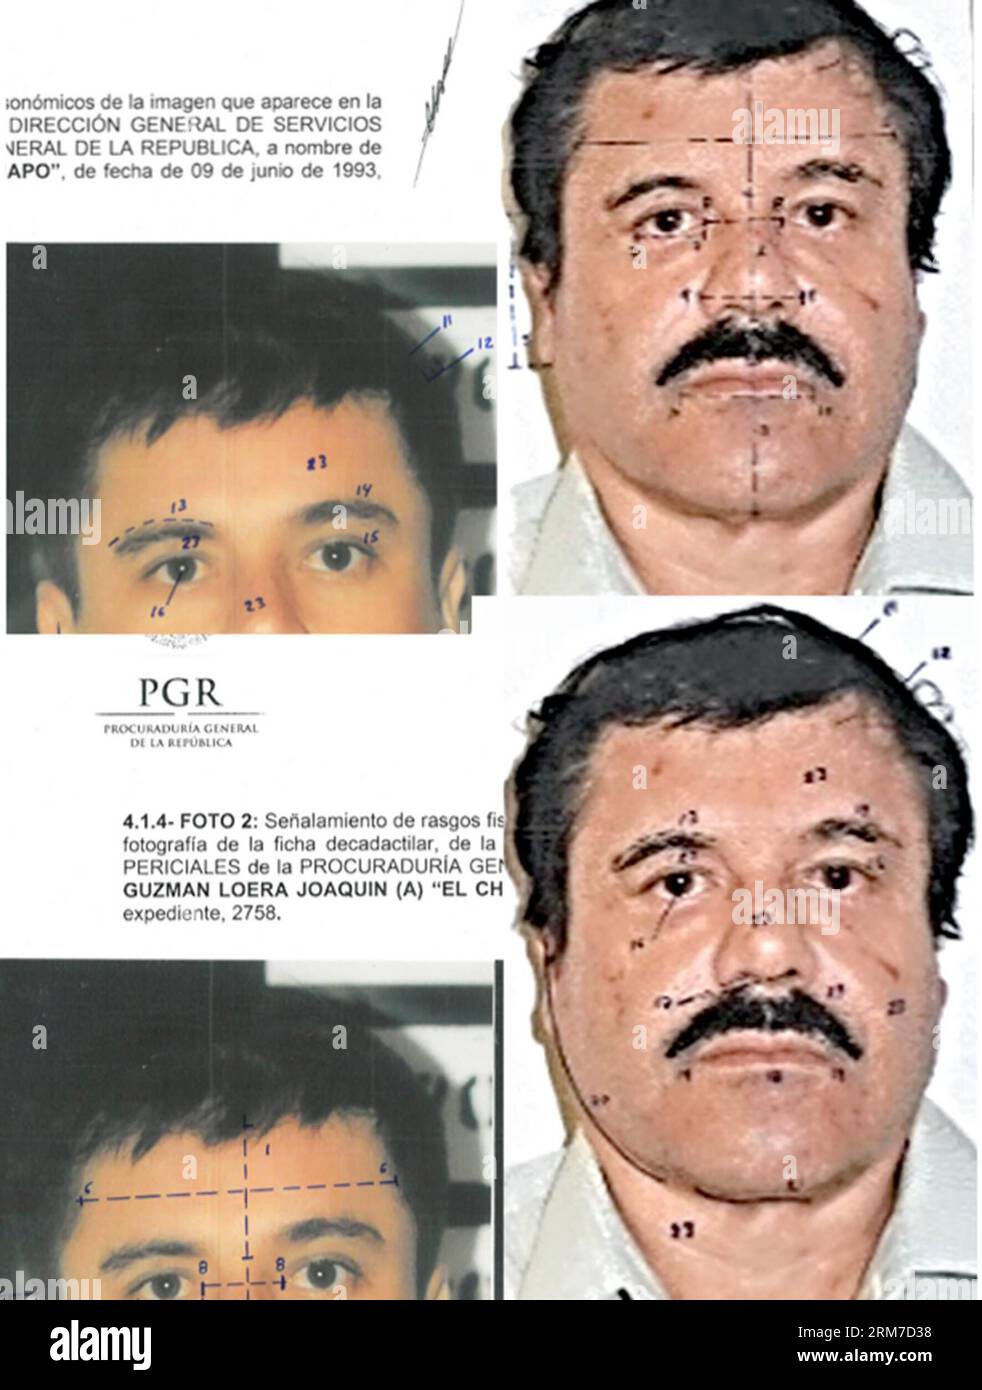 (140226) -- CITTÀ DEL MESSICO, 26 febbraio 2014 (Xinhua) -- questa combinazione di fotografie rilasciate dall'ufficio generale del procuratore generale del Messico (PGR) con segni di identificazione tracciati dalla fonte per evidenziare somiglianze nelle misurazioni del volto, mostra Joaquin El Chapo Guzman, utilizzando immagini tratte dalle sue detenzioni del 1993 e del 2014. Il leader del cartello di Sinaloa è stato sottoposto a un tampone buccale, a uno studio di identità fisiognomica e a un test di 10 impronte digitali. I tribunali federali in Messico martedì hanno formalmente accusato Joaquin El Chapo Guzman, il leader catturato del cartello della droga di Sinaloa, di criminalità organizzata e traffico di droga. (X Foto Stock